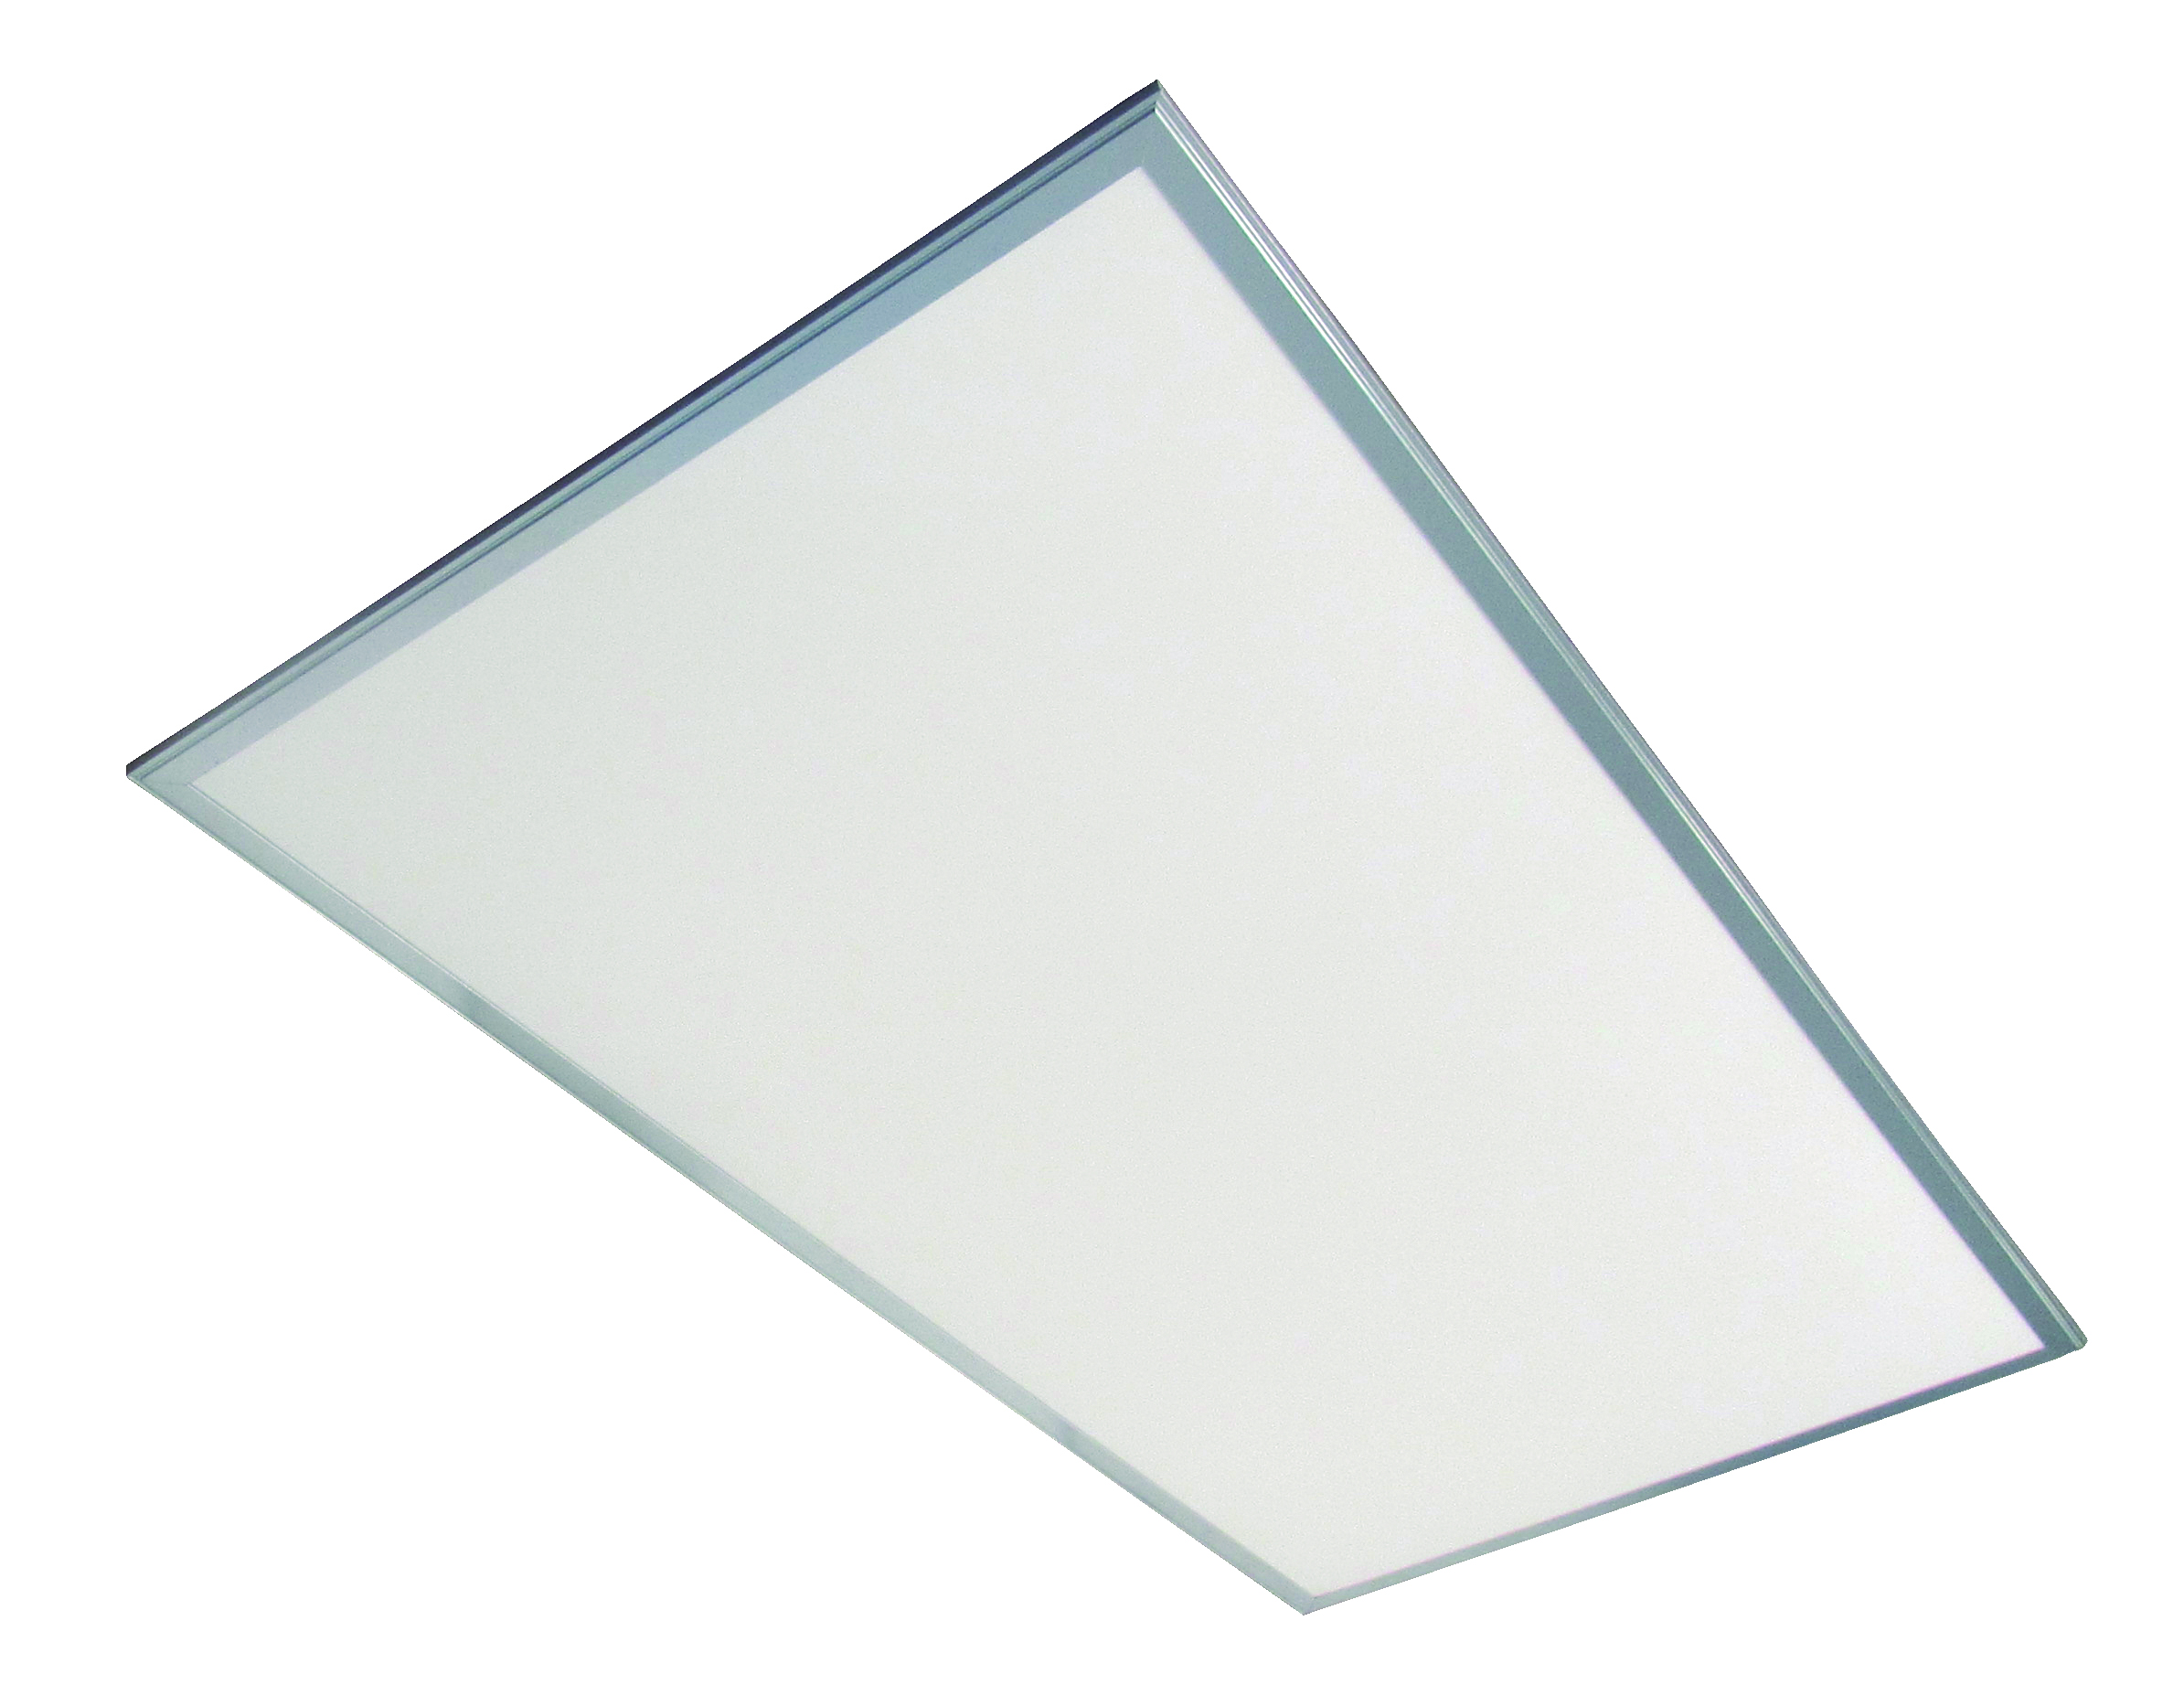 Panel LED Luz fría 40W Blanco Illux - Empotrar/suspender, Illux